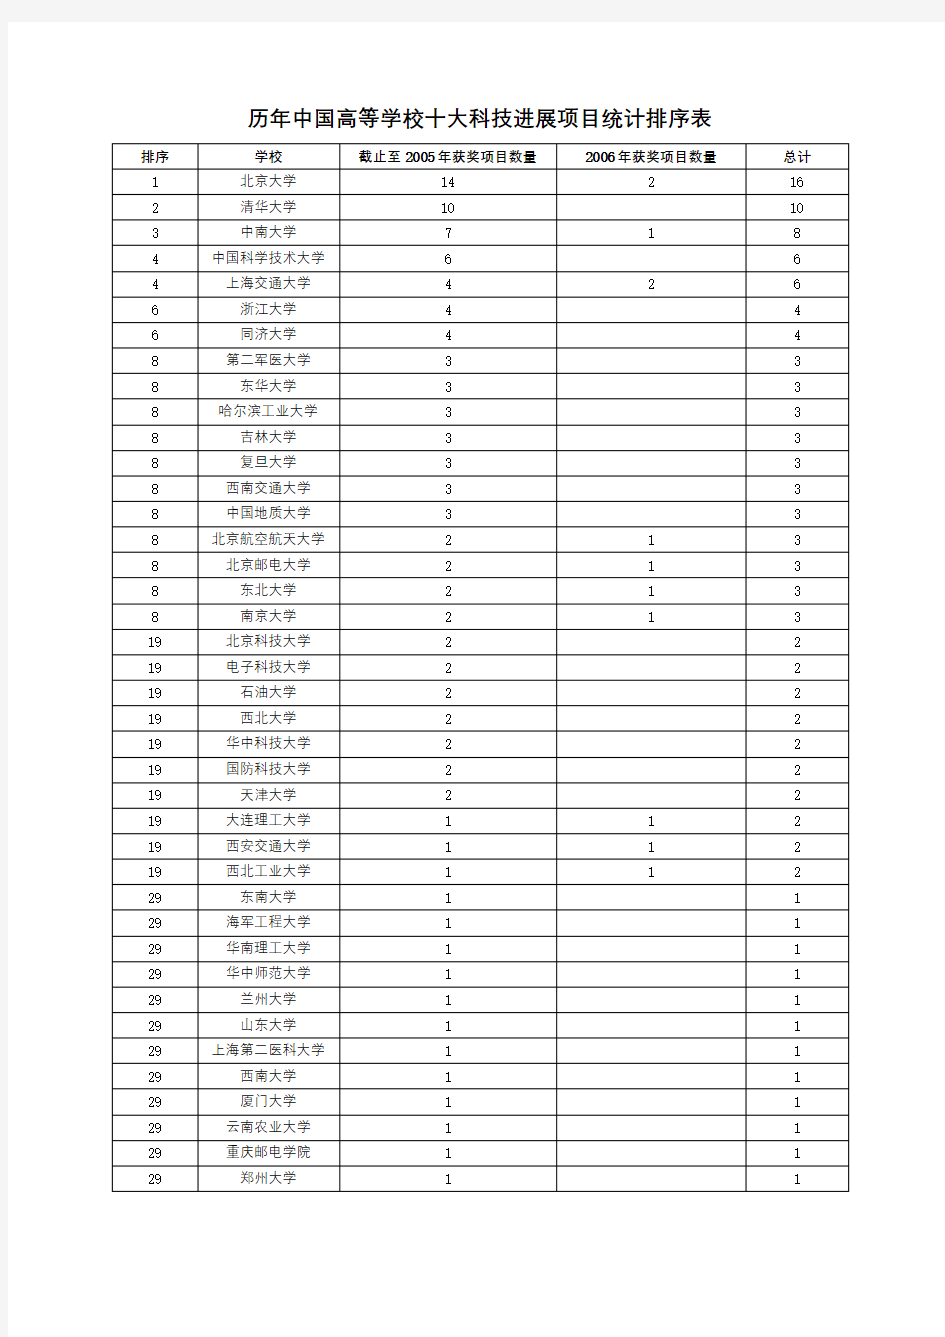 历年中国高等学校十大科技进展项目统计排序表【模板】